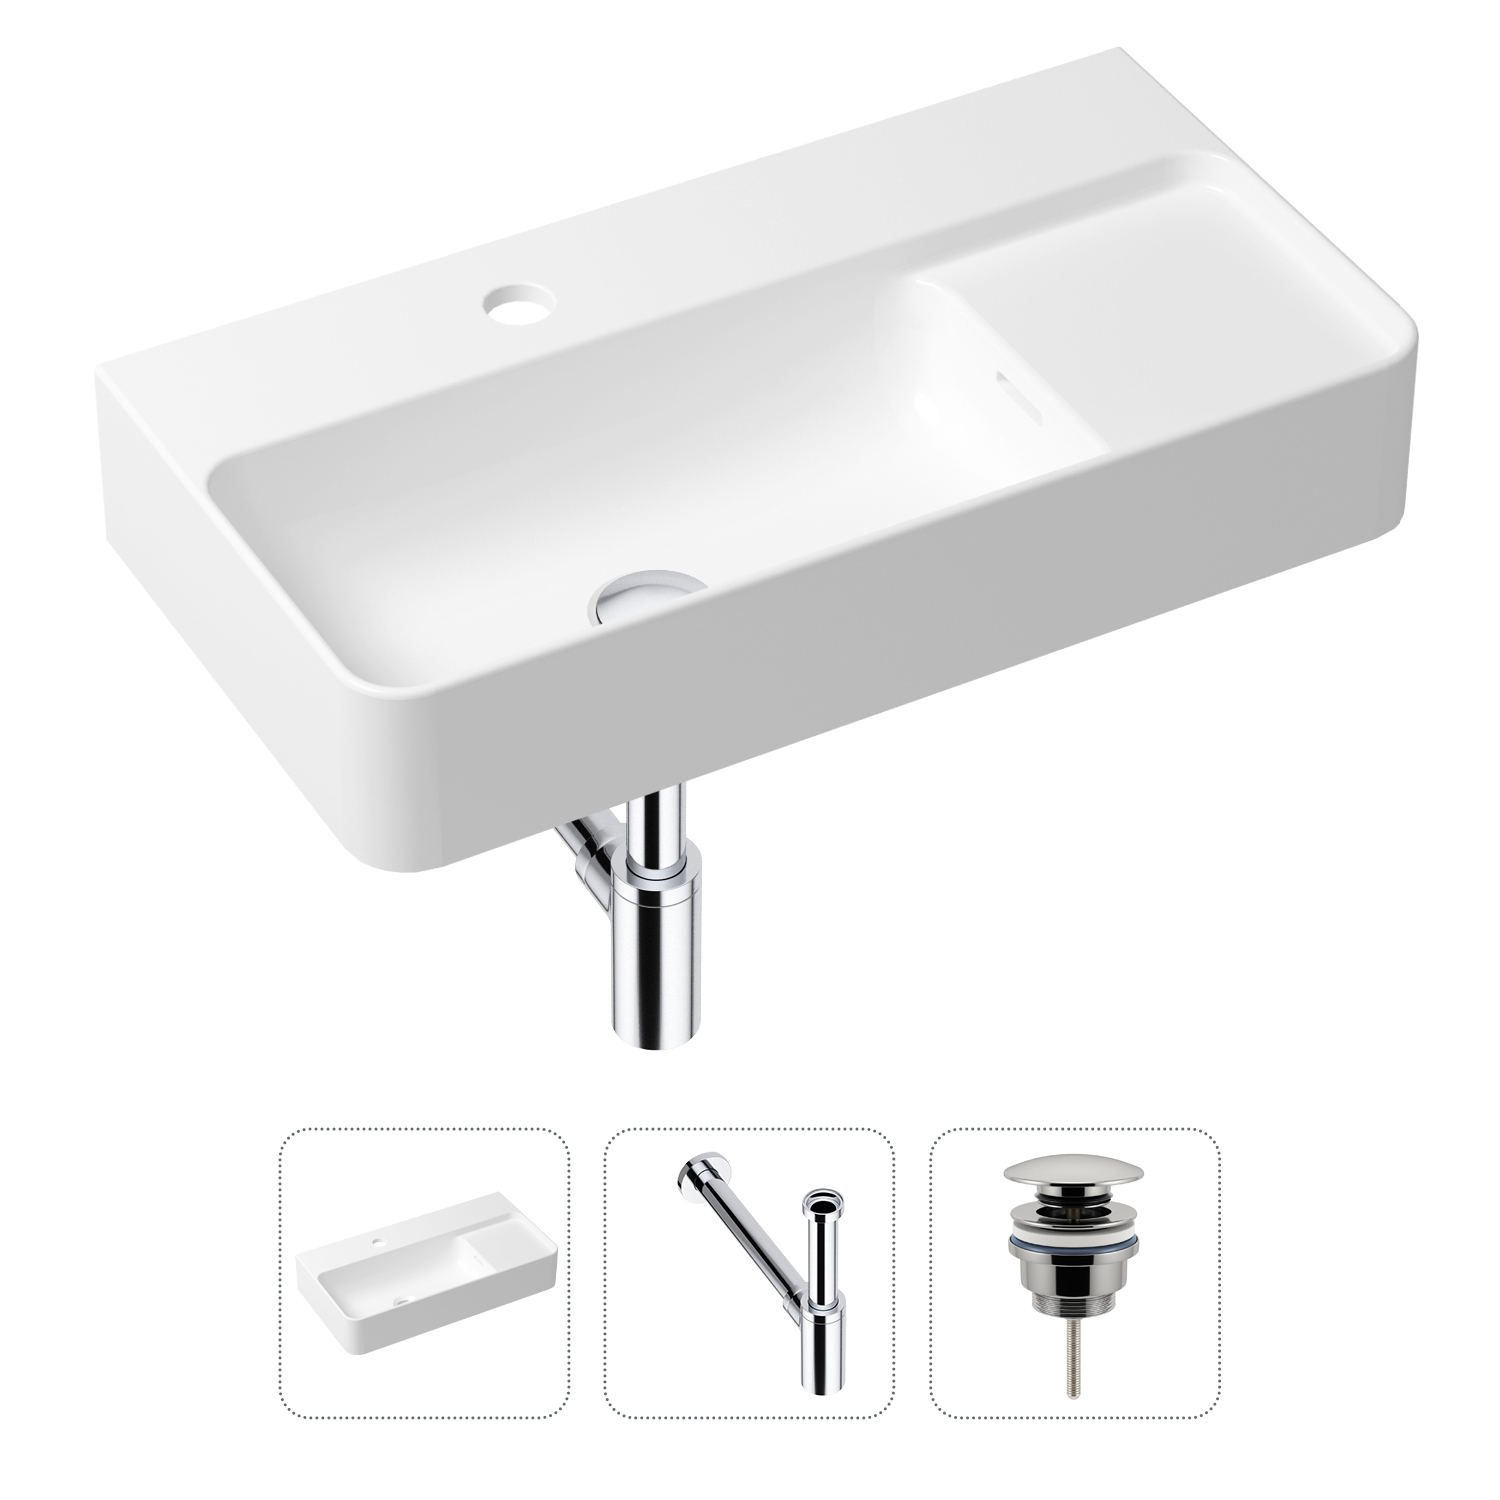 Комплект 3 в 1 Lavinia Boho Bathroom Sink 21520493: раковина 60 см, сифон, донный клапан